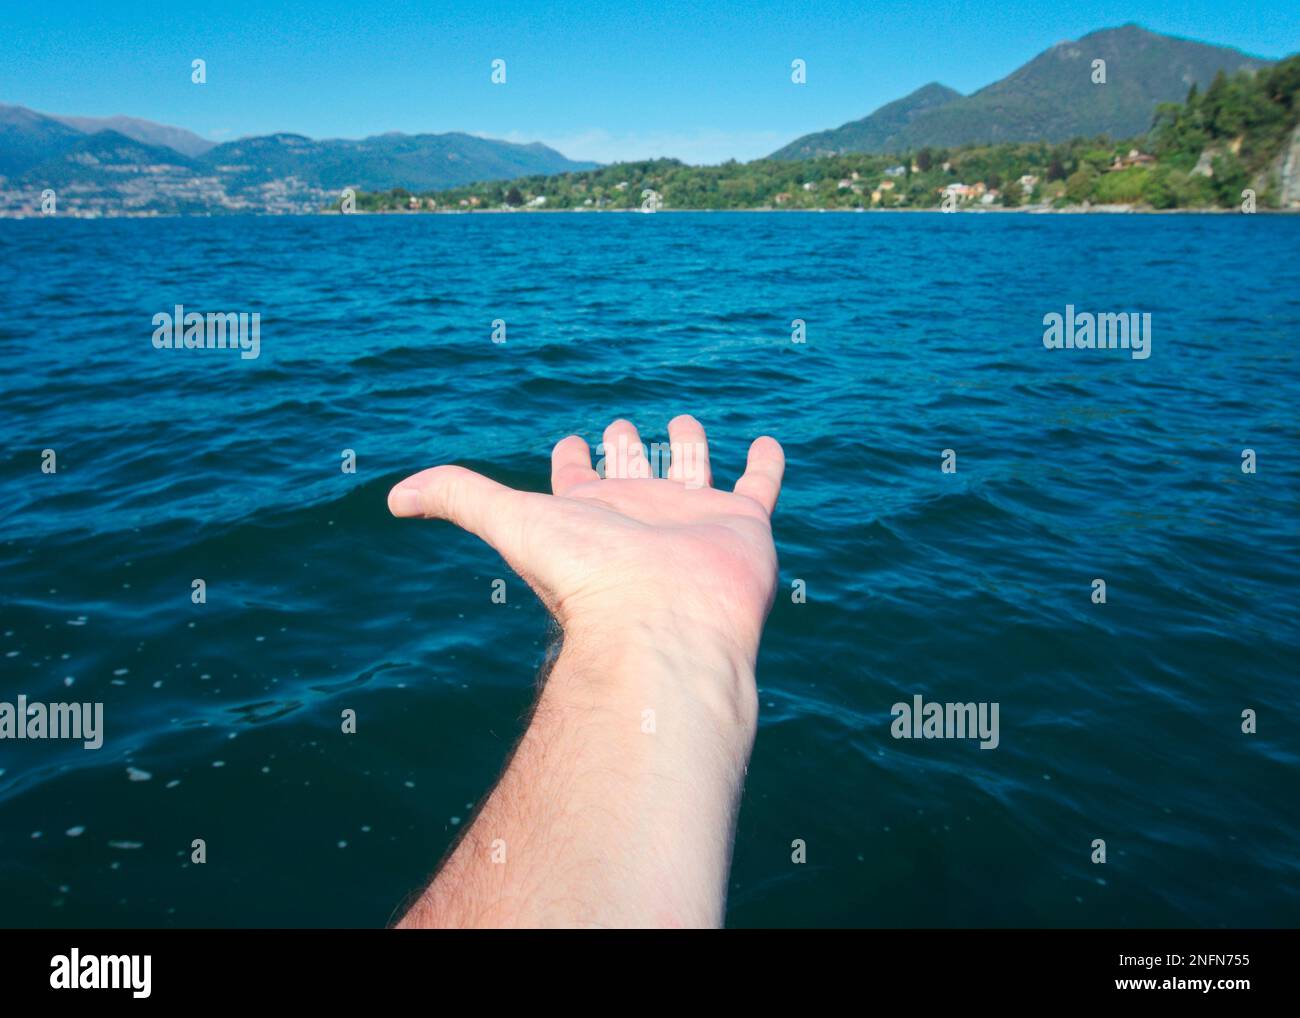 Il braccio maschile si allunga verso l'acqua, il lago maggiore, il Piemonte, l'Italia Foto Stock